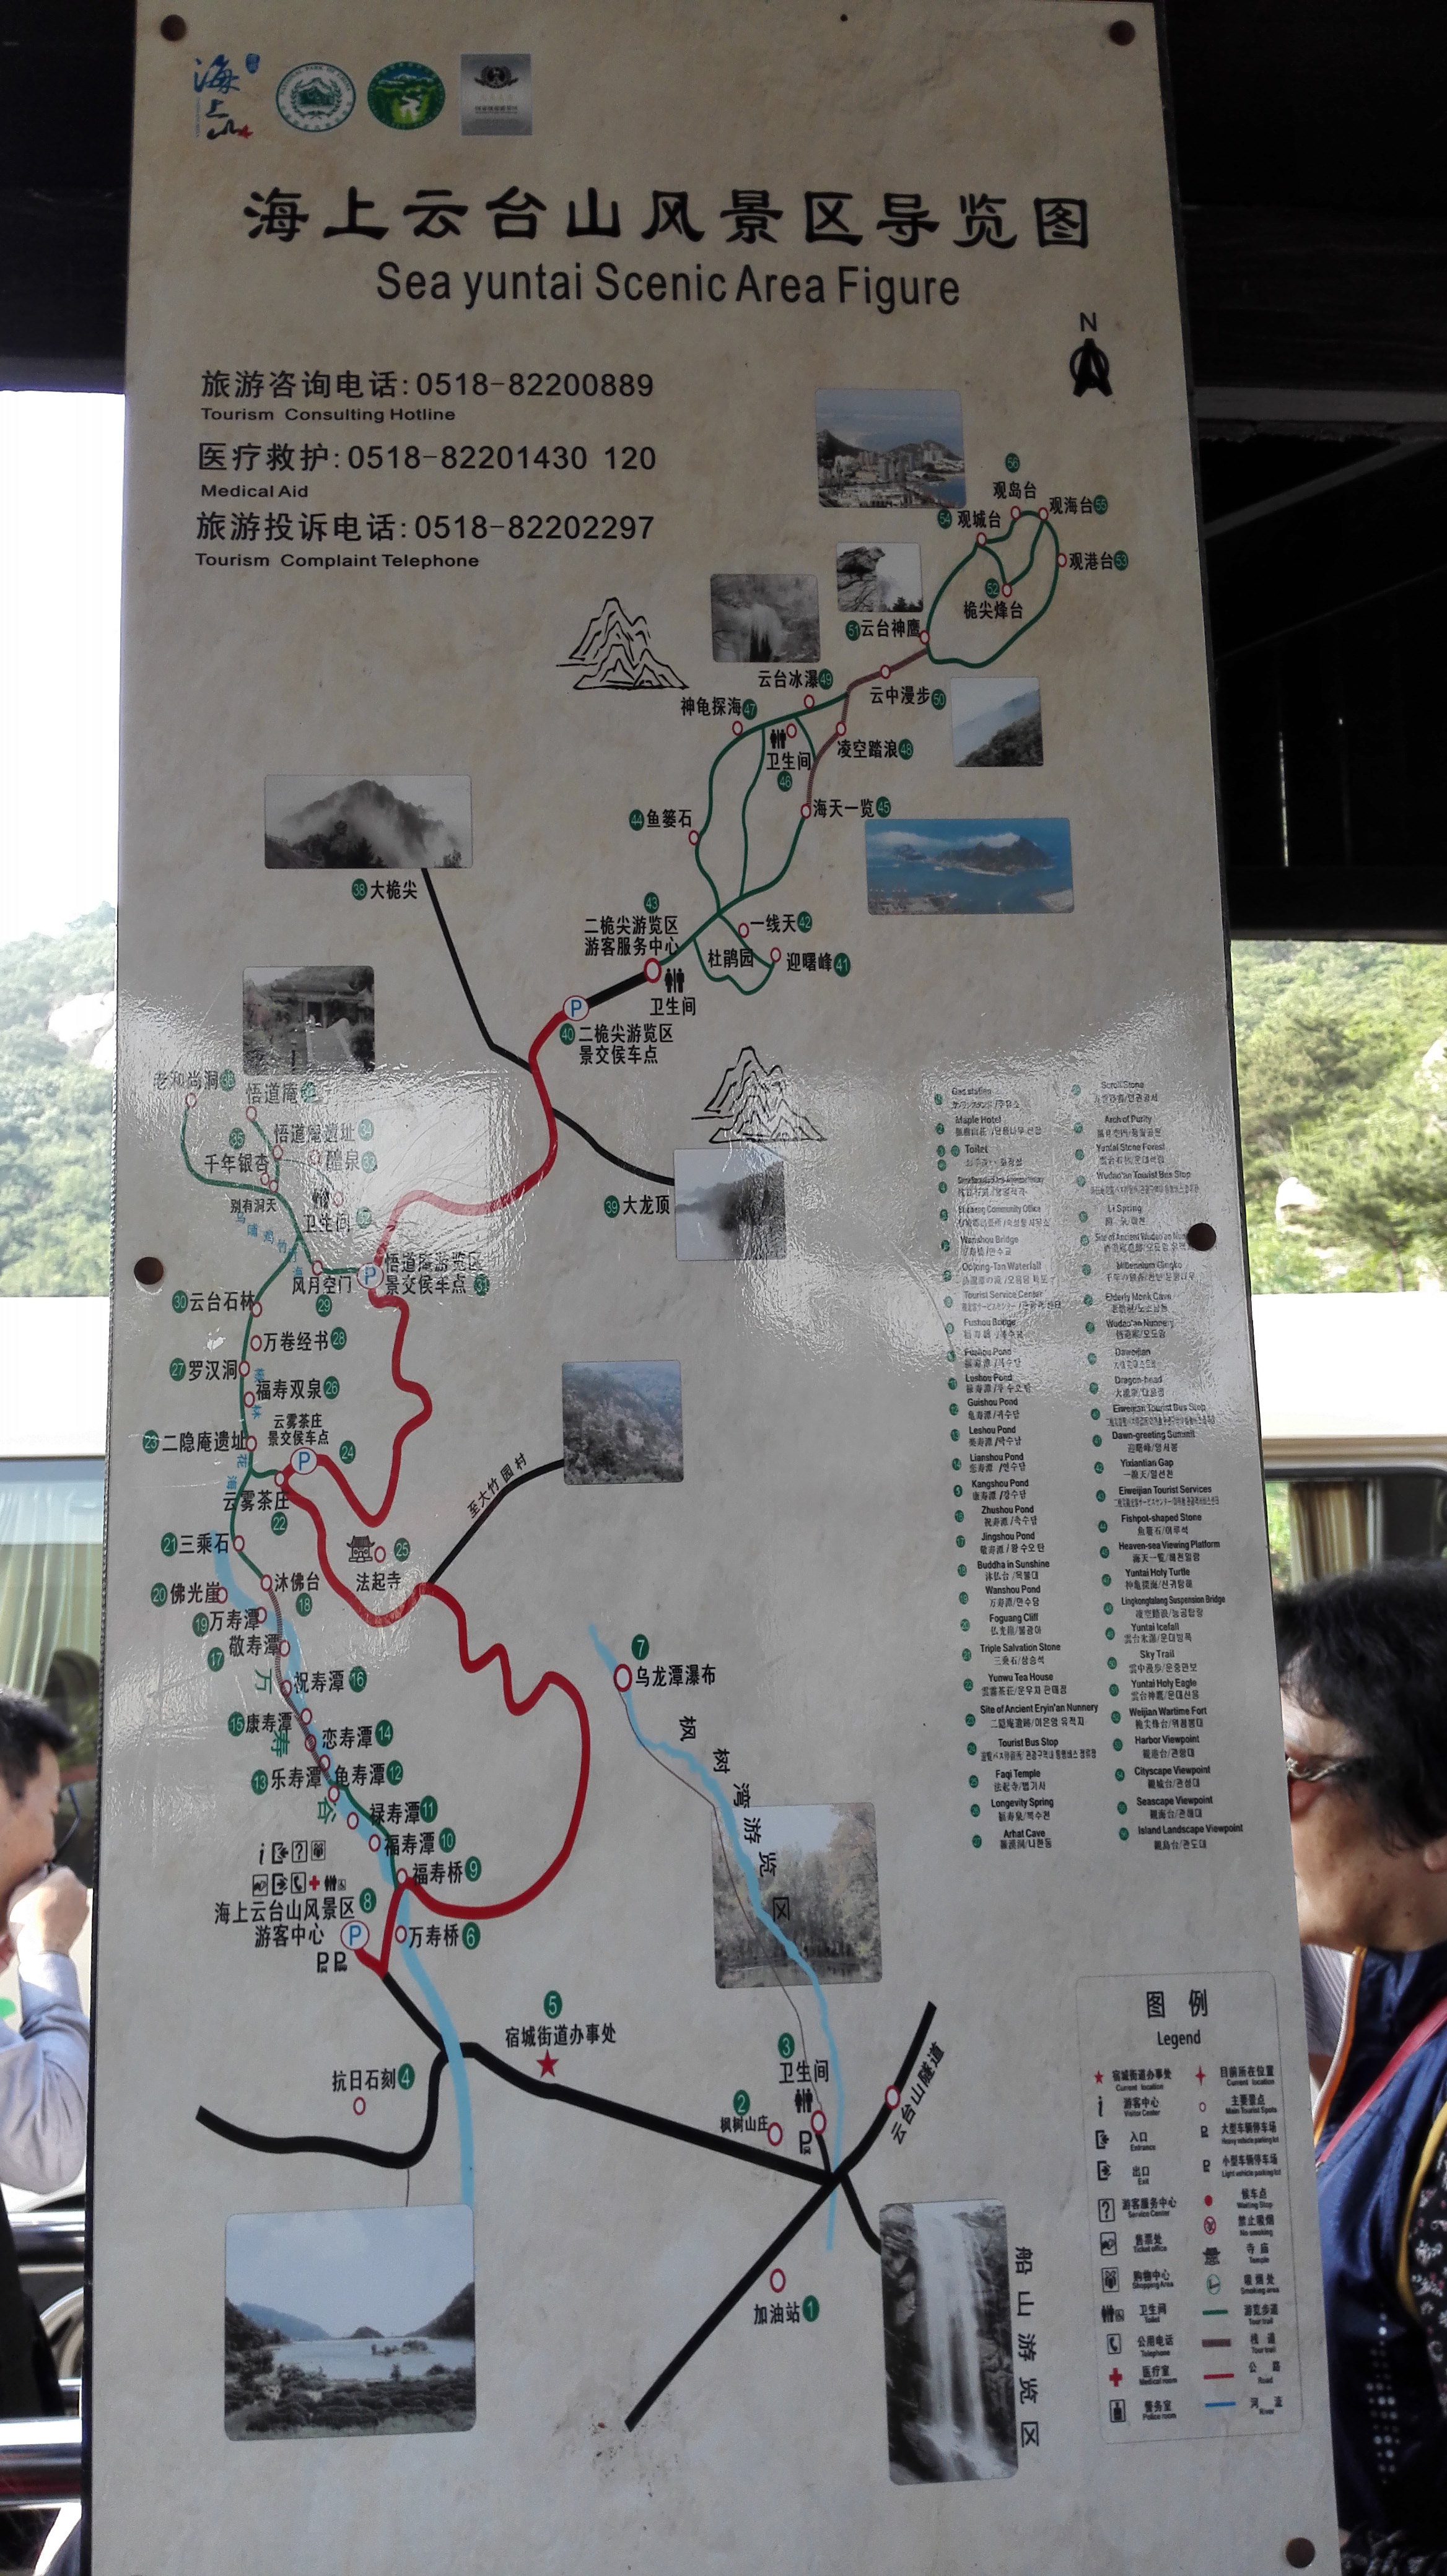 海上云台山景区路线图片